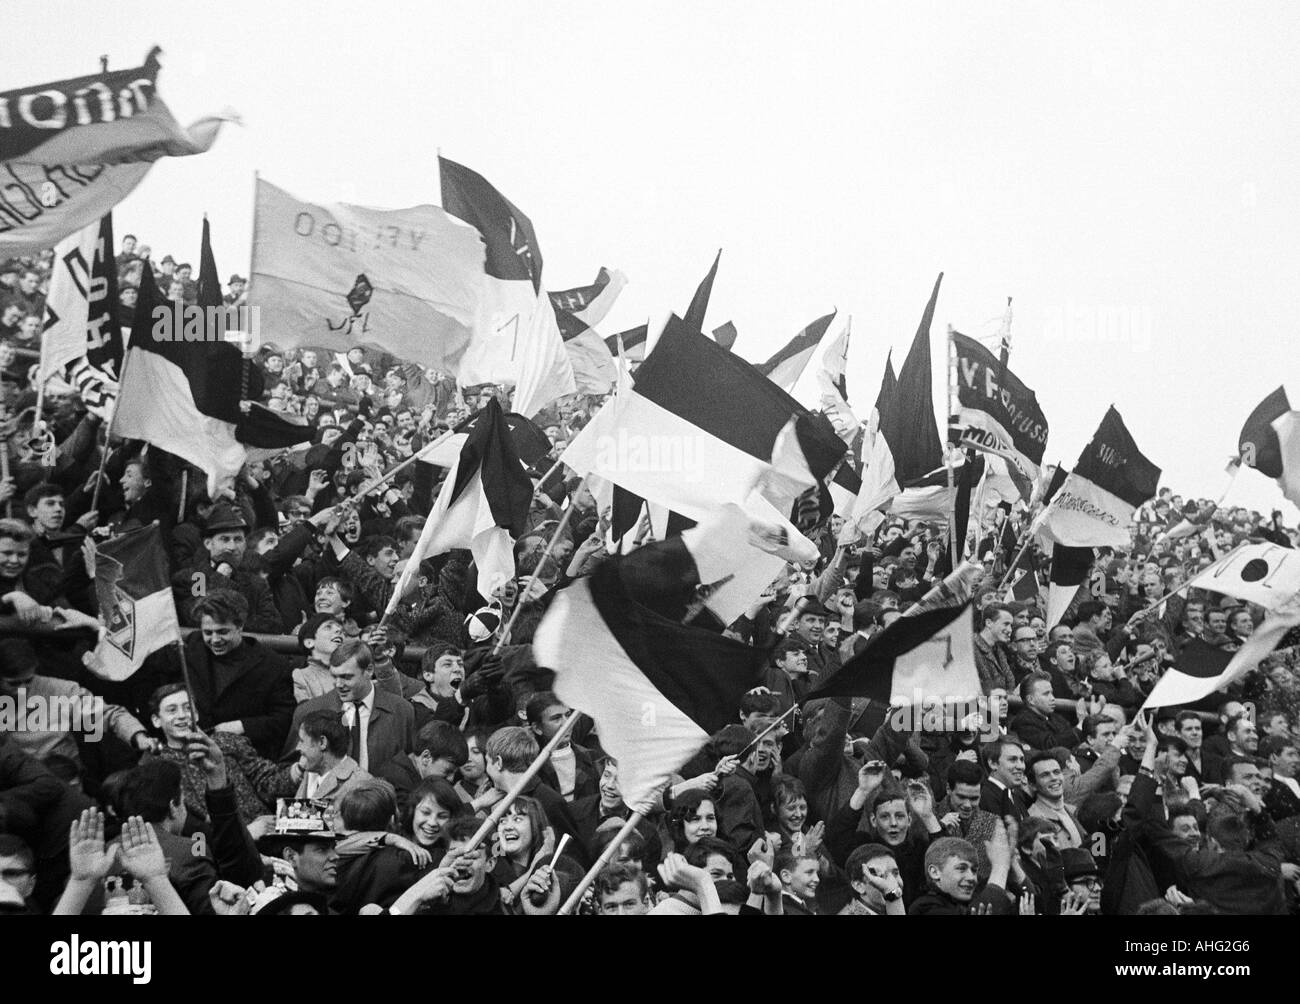 Fußball, Bundesliga, 1966/1967, Borussia Moenchengladbach vs. Hannover 96 2:0, Boekelberg Stadion, Menge von Zuschauern, Mönchengladbach Fans schwenkten ihre Club-Fahnen Stockfoto